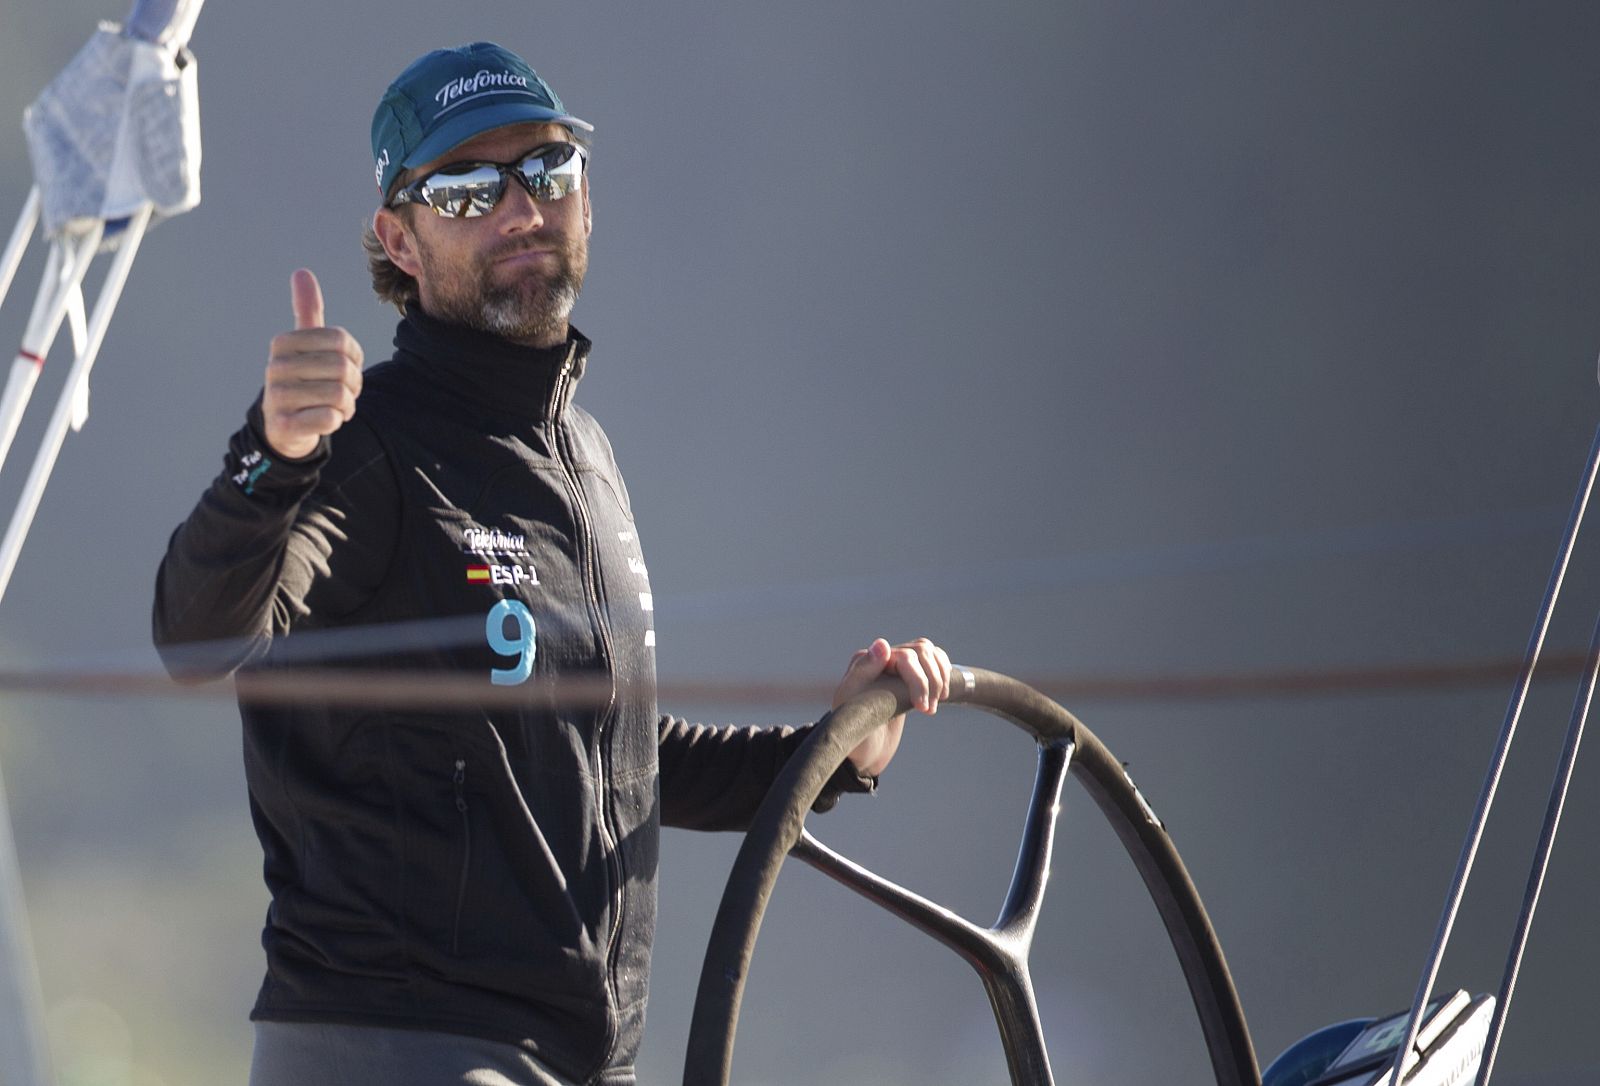 Fotografía facilitada por Telefónica Team del patrón Iker Martínez, al mando del barco 'Telefónica' español en la Volvo Ocean Race.